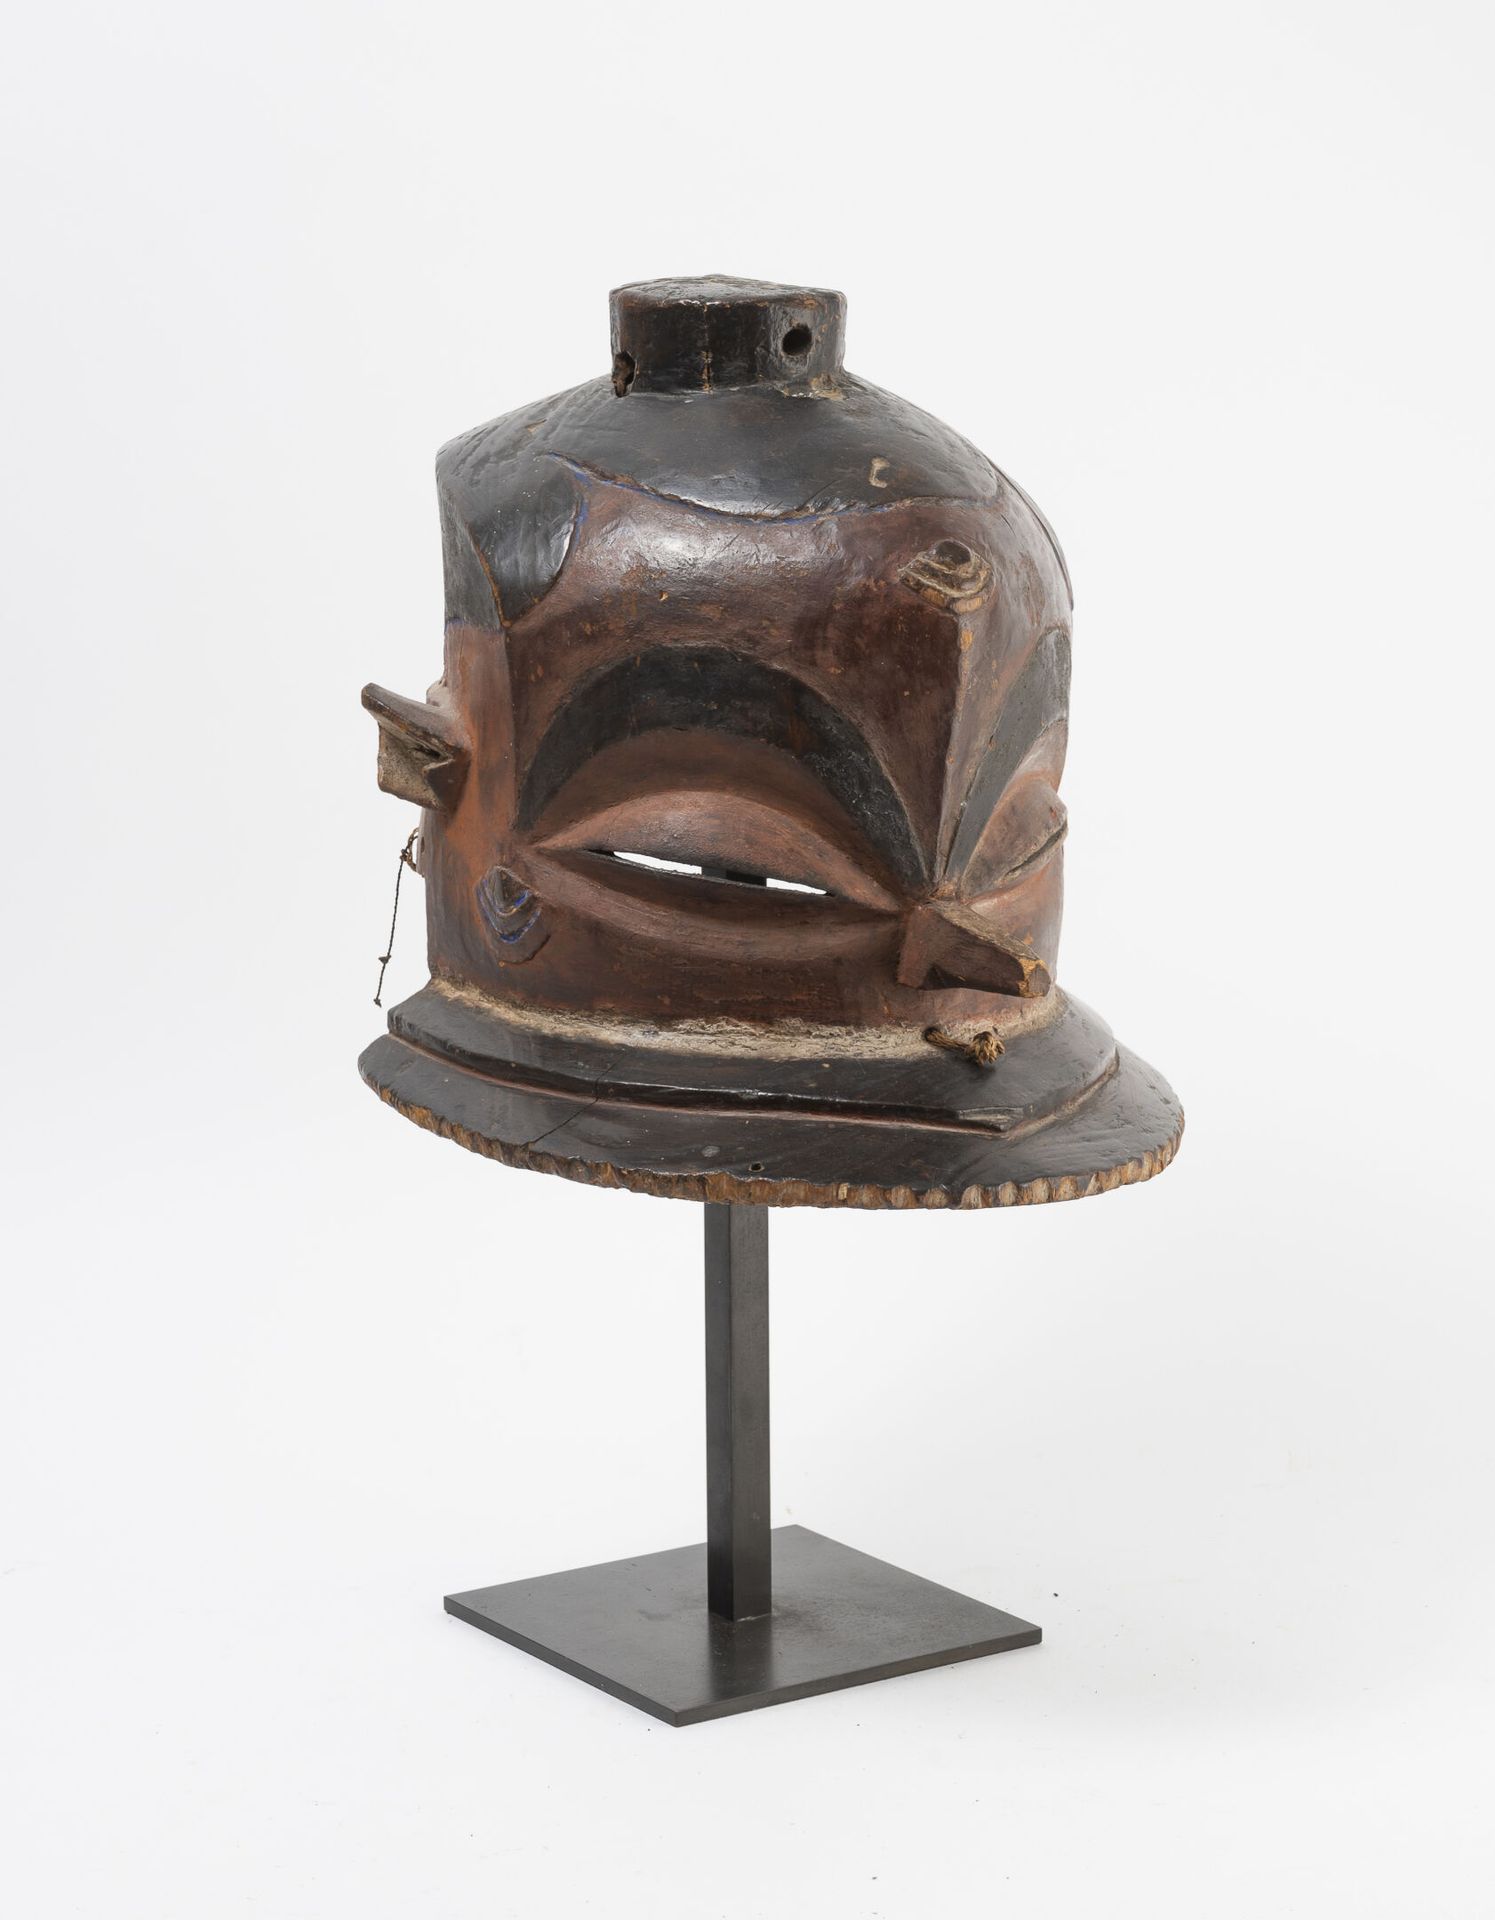 Congo, Pende Máscara de casco de madera tallada y patinada.

H. 27 cm de altura.&hellip;